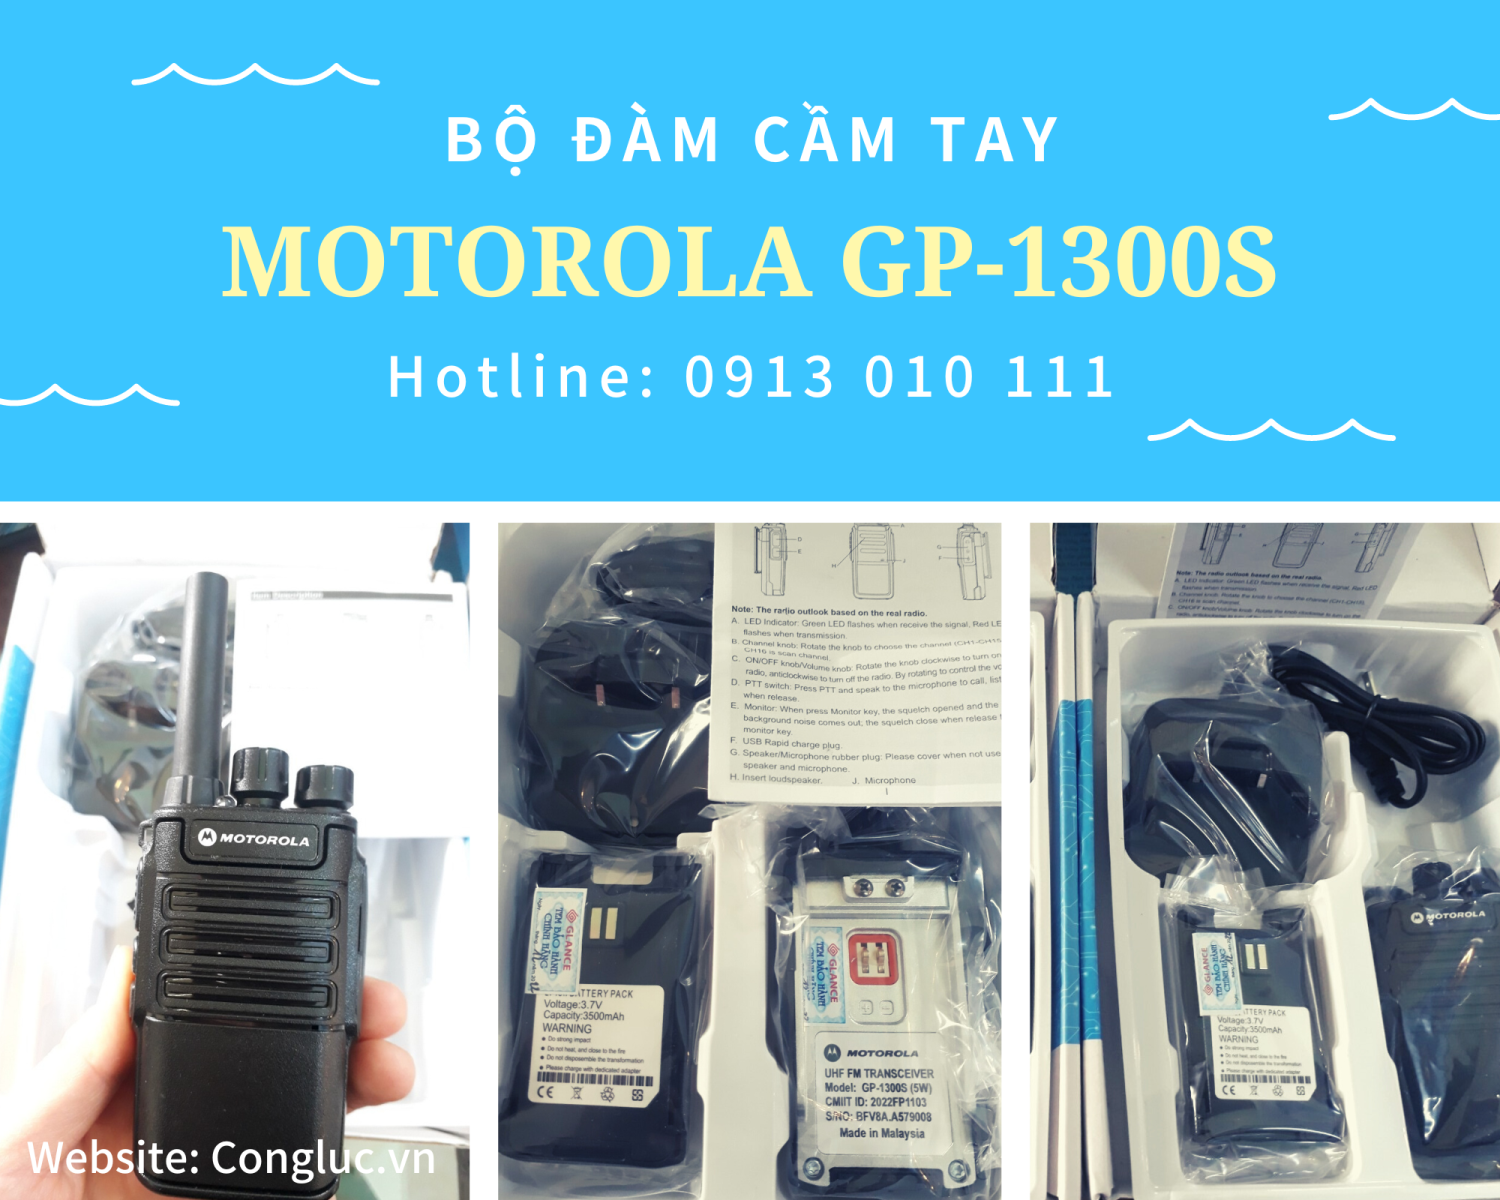 Bán máy bộ đàm cầm tay Motorola GP-1300S giá rẻ